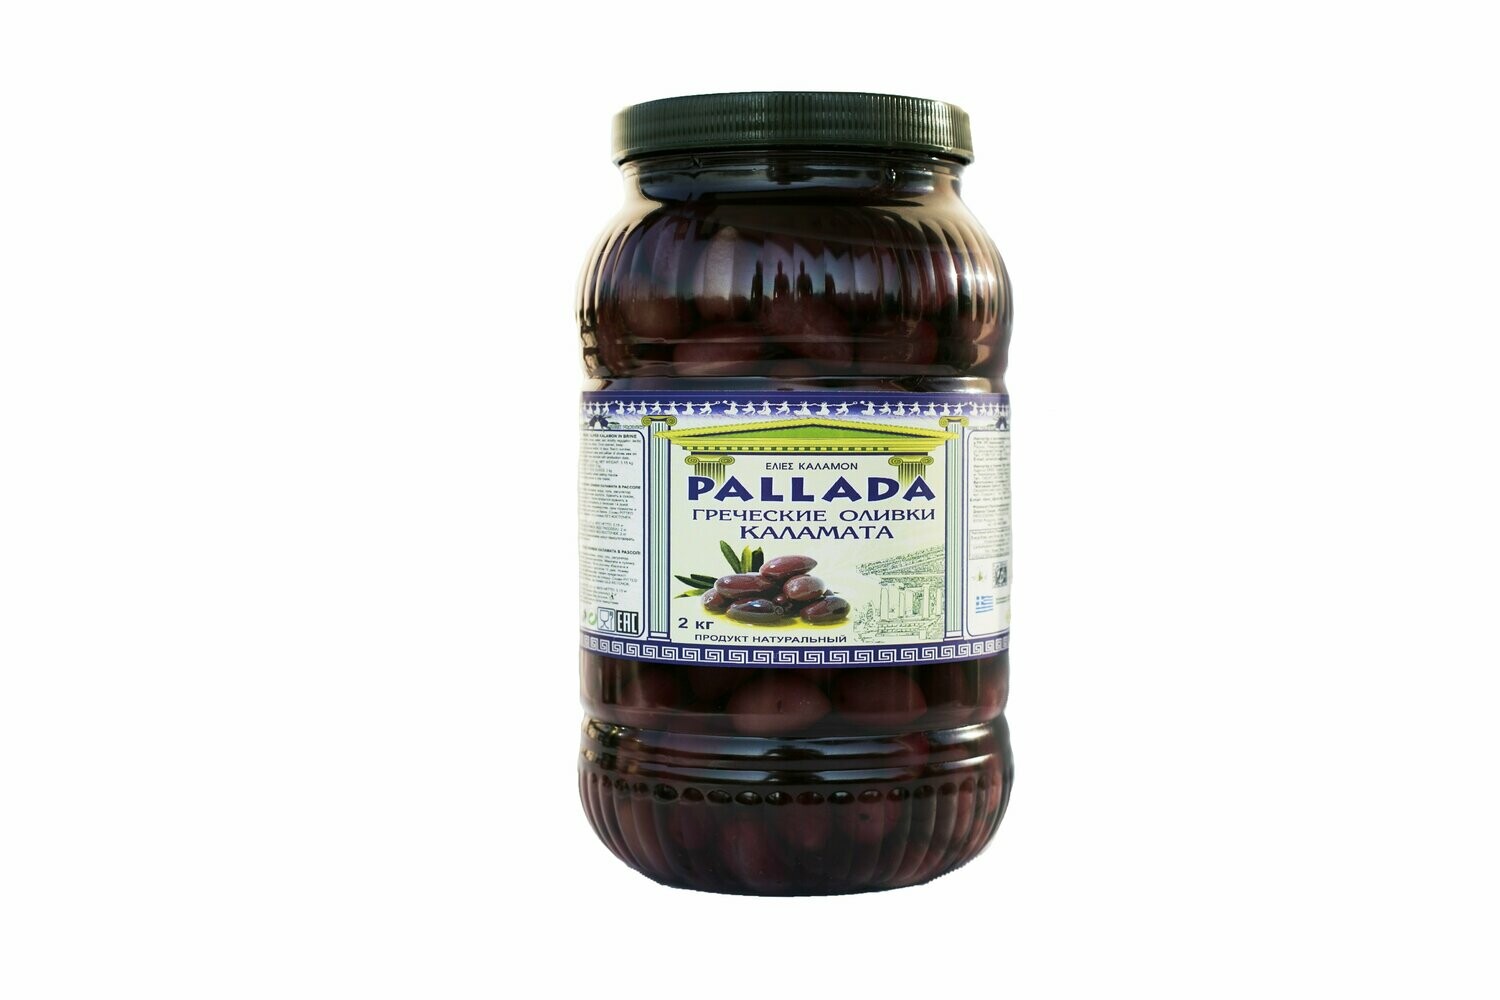 Оливки греческие "PALLADA" Каламата с косточкой в рассоле, калибр 161-180